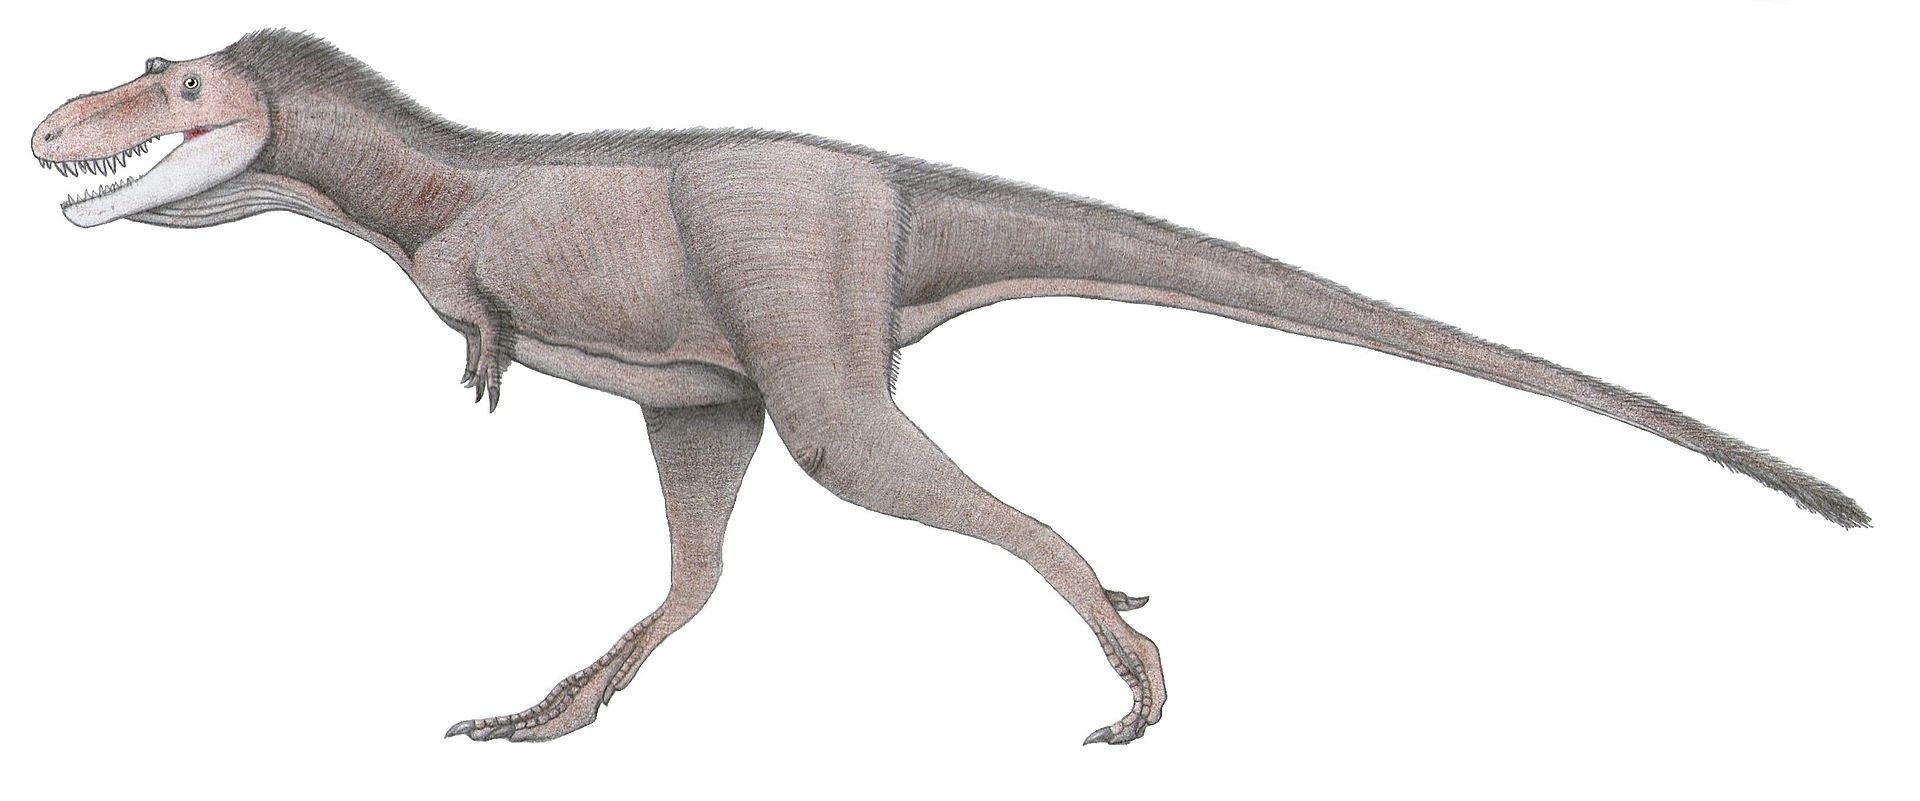 Rekonstrukce možného vzezření nedospělého exempláře druhu Gorgosaurus libratus. Tento tyranosaurid žil o několik milionů let dříve než T. rex a nedosahoval jeho rozměrů. Nedospělí jedinci, jako je exemplář ROM 1247, zřejmě dokázali velmi rychle běhat